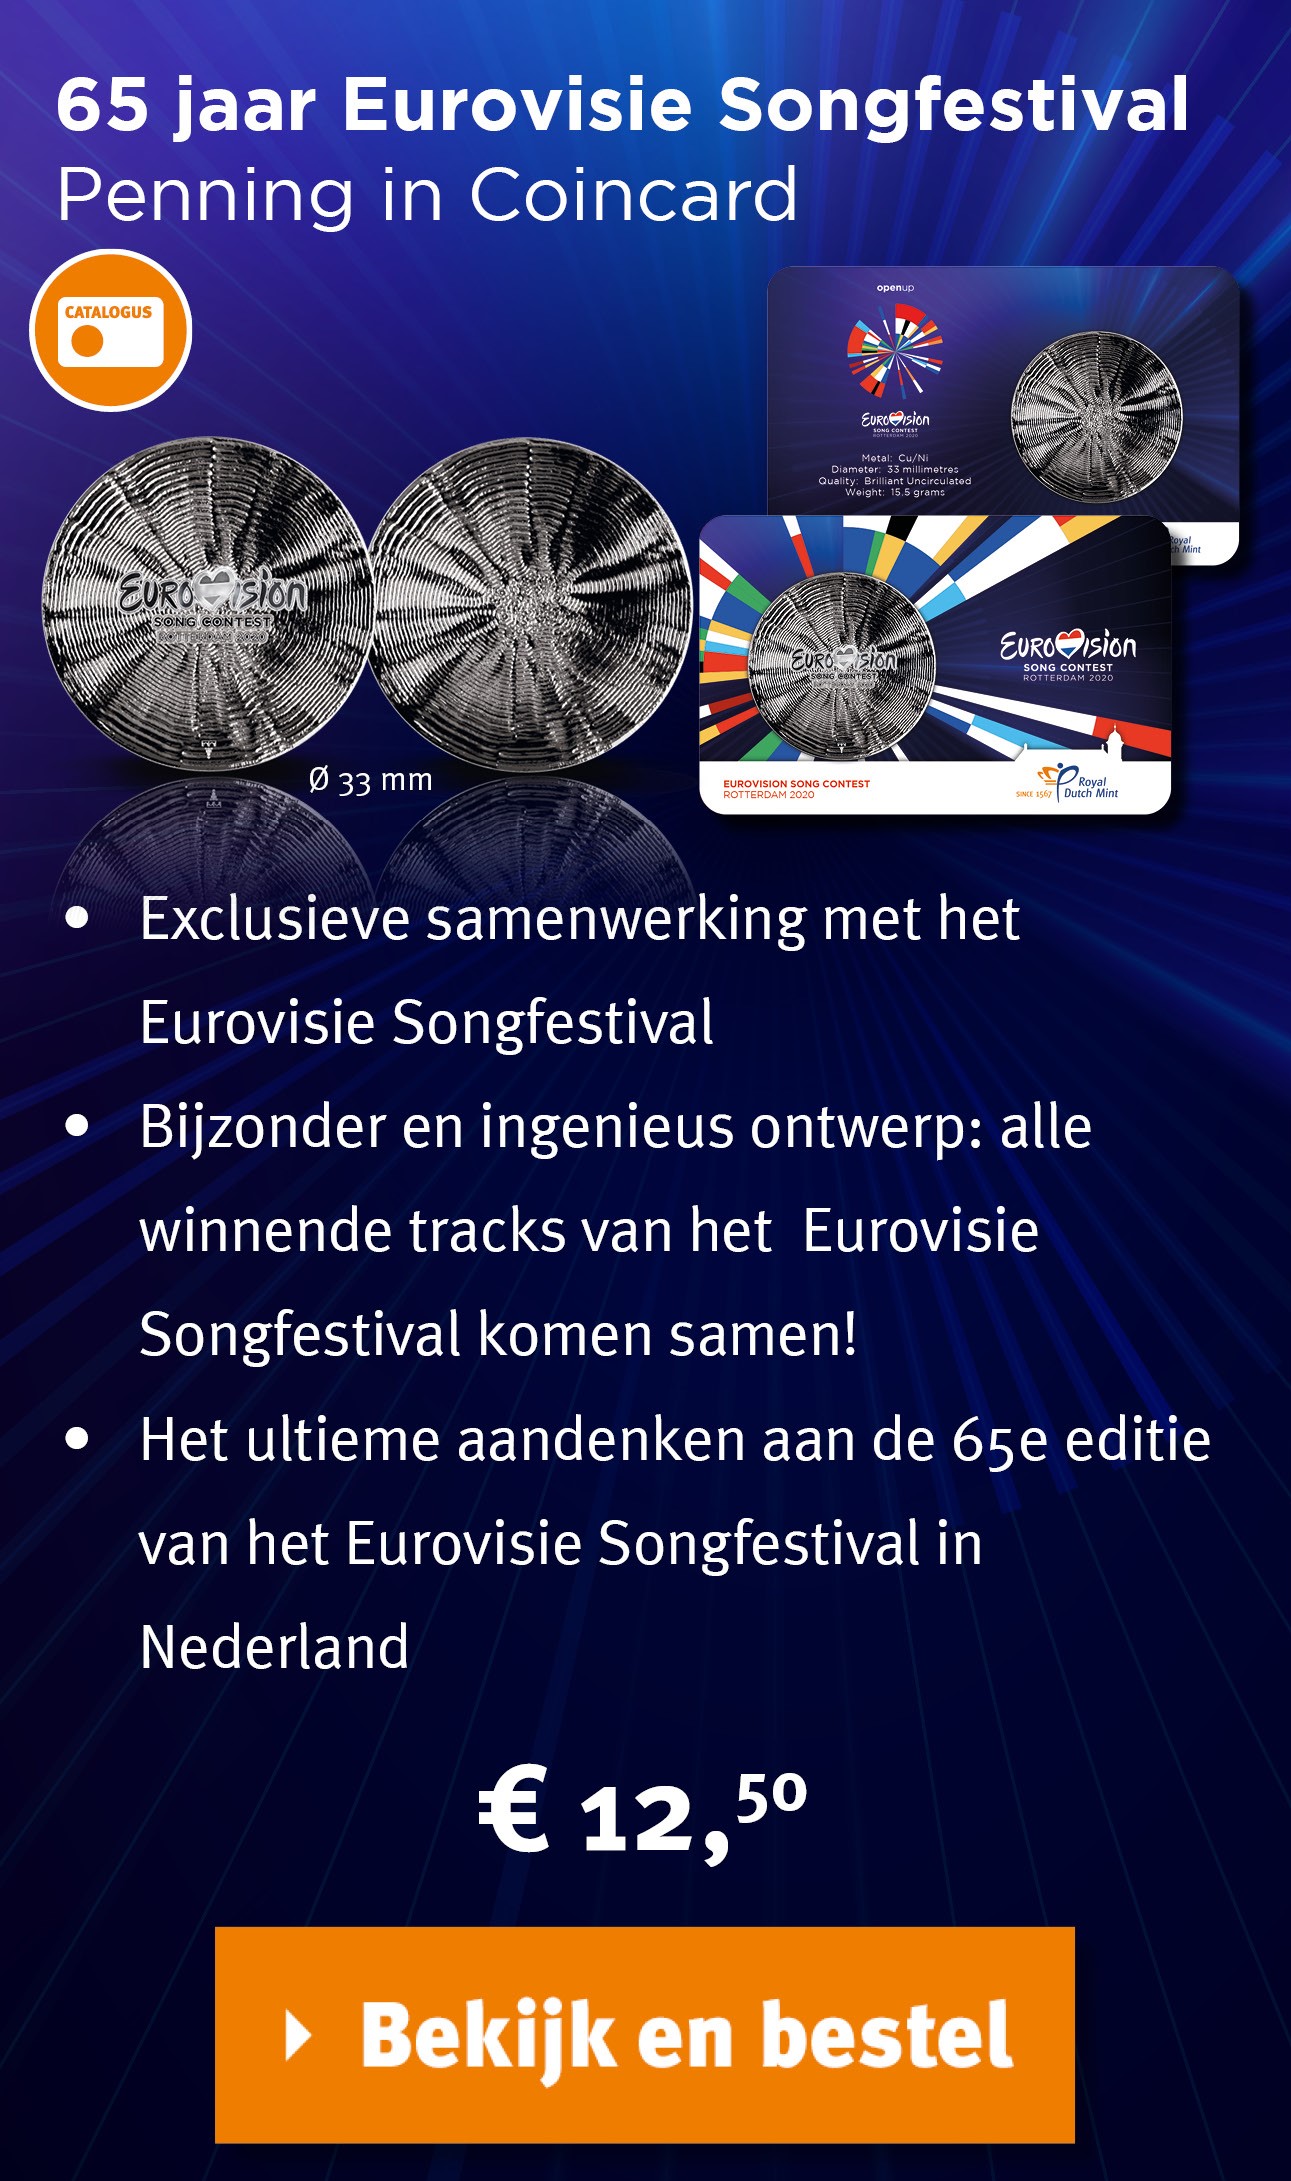 Bekijk en bestel: 65 jaar Eurovisie Songfestival Penning in coincard